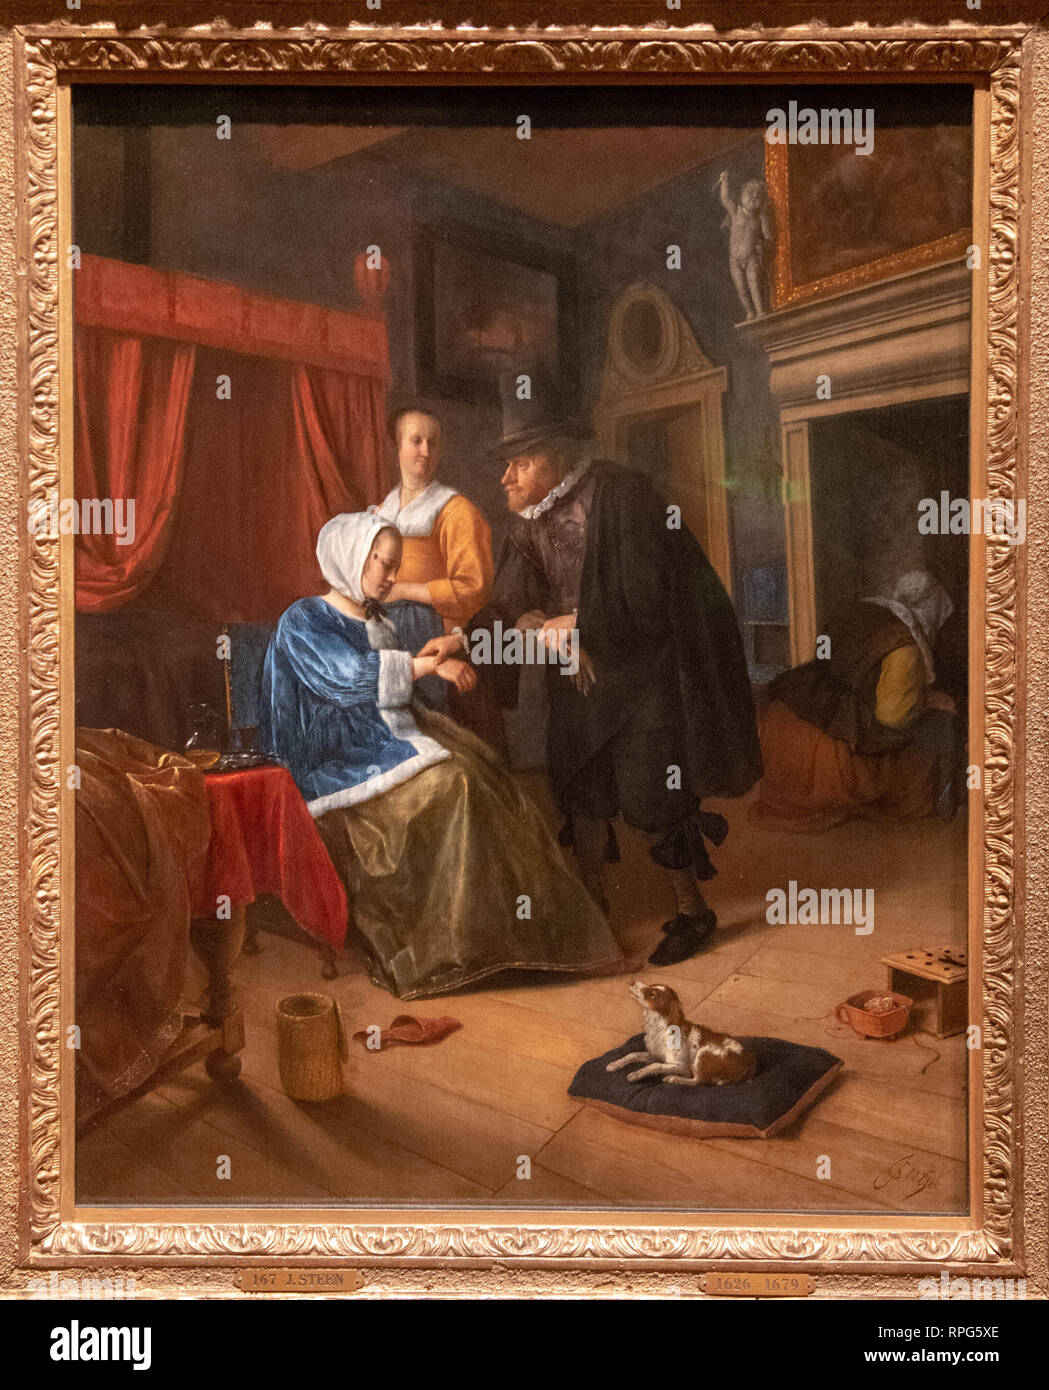 The Hague 1660 Stockfotos und -bilder Kaufen - Alamy